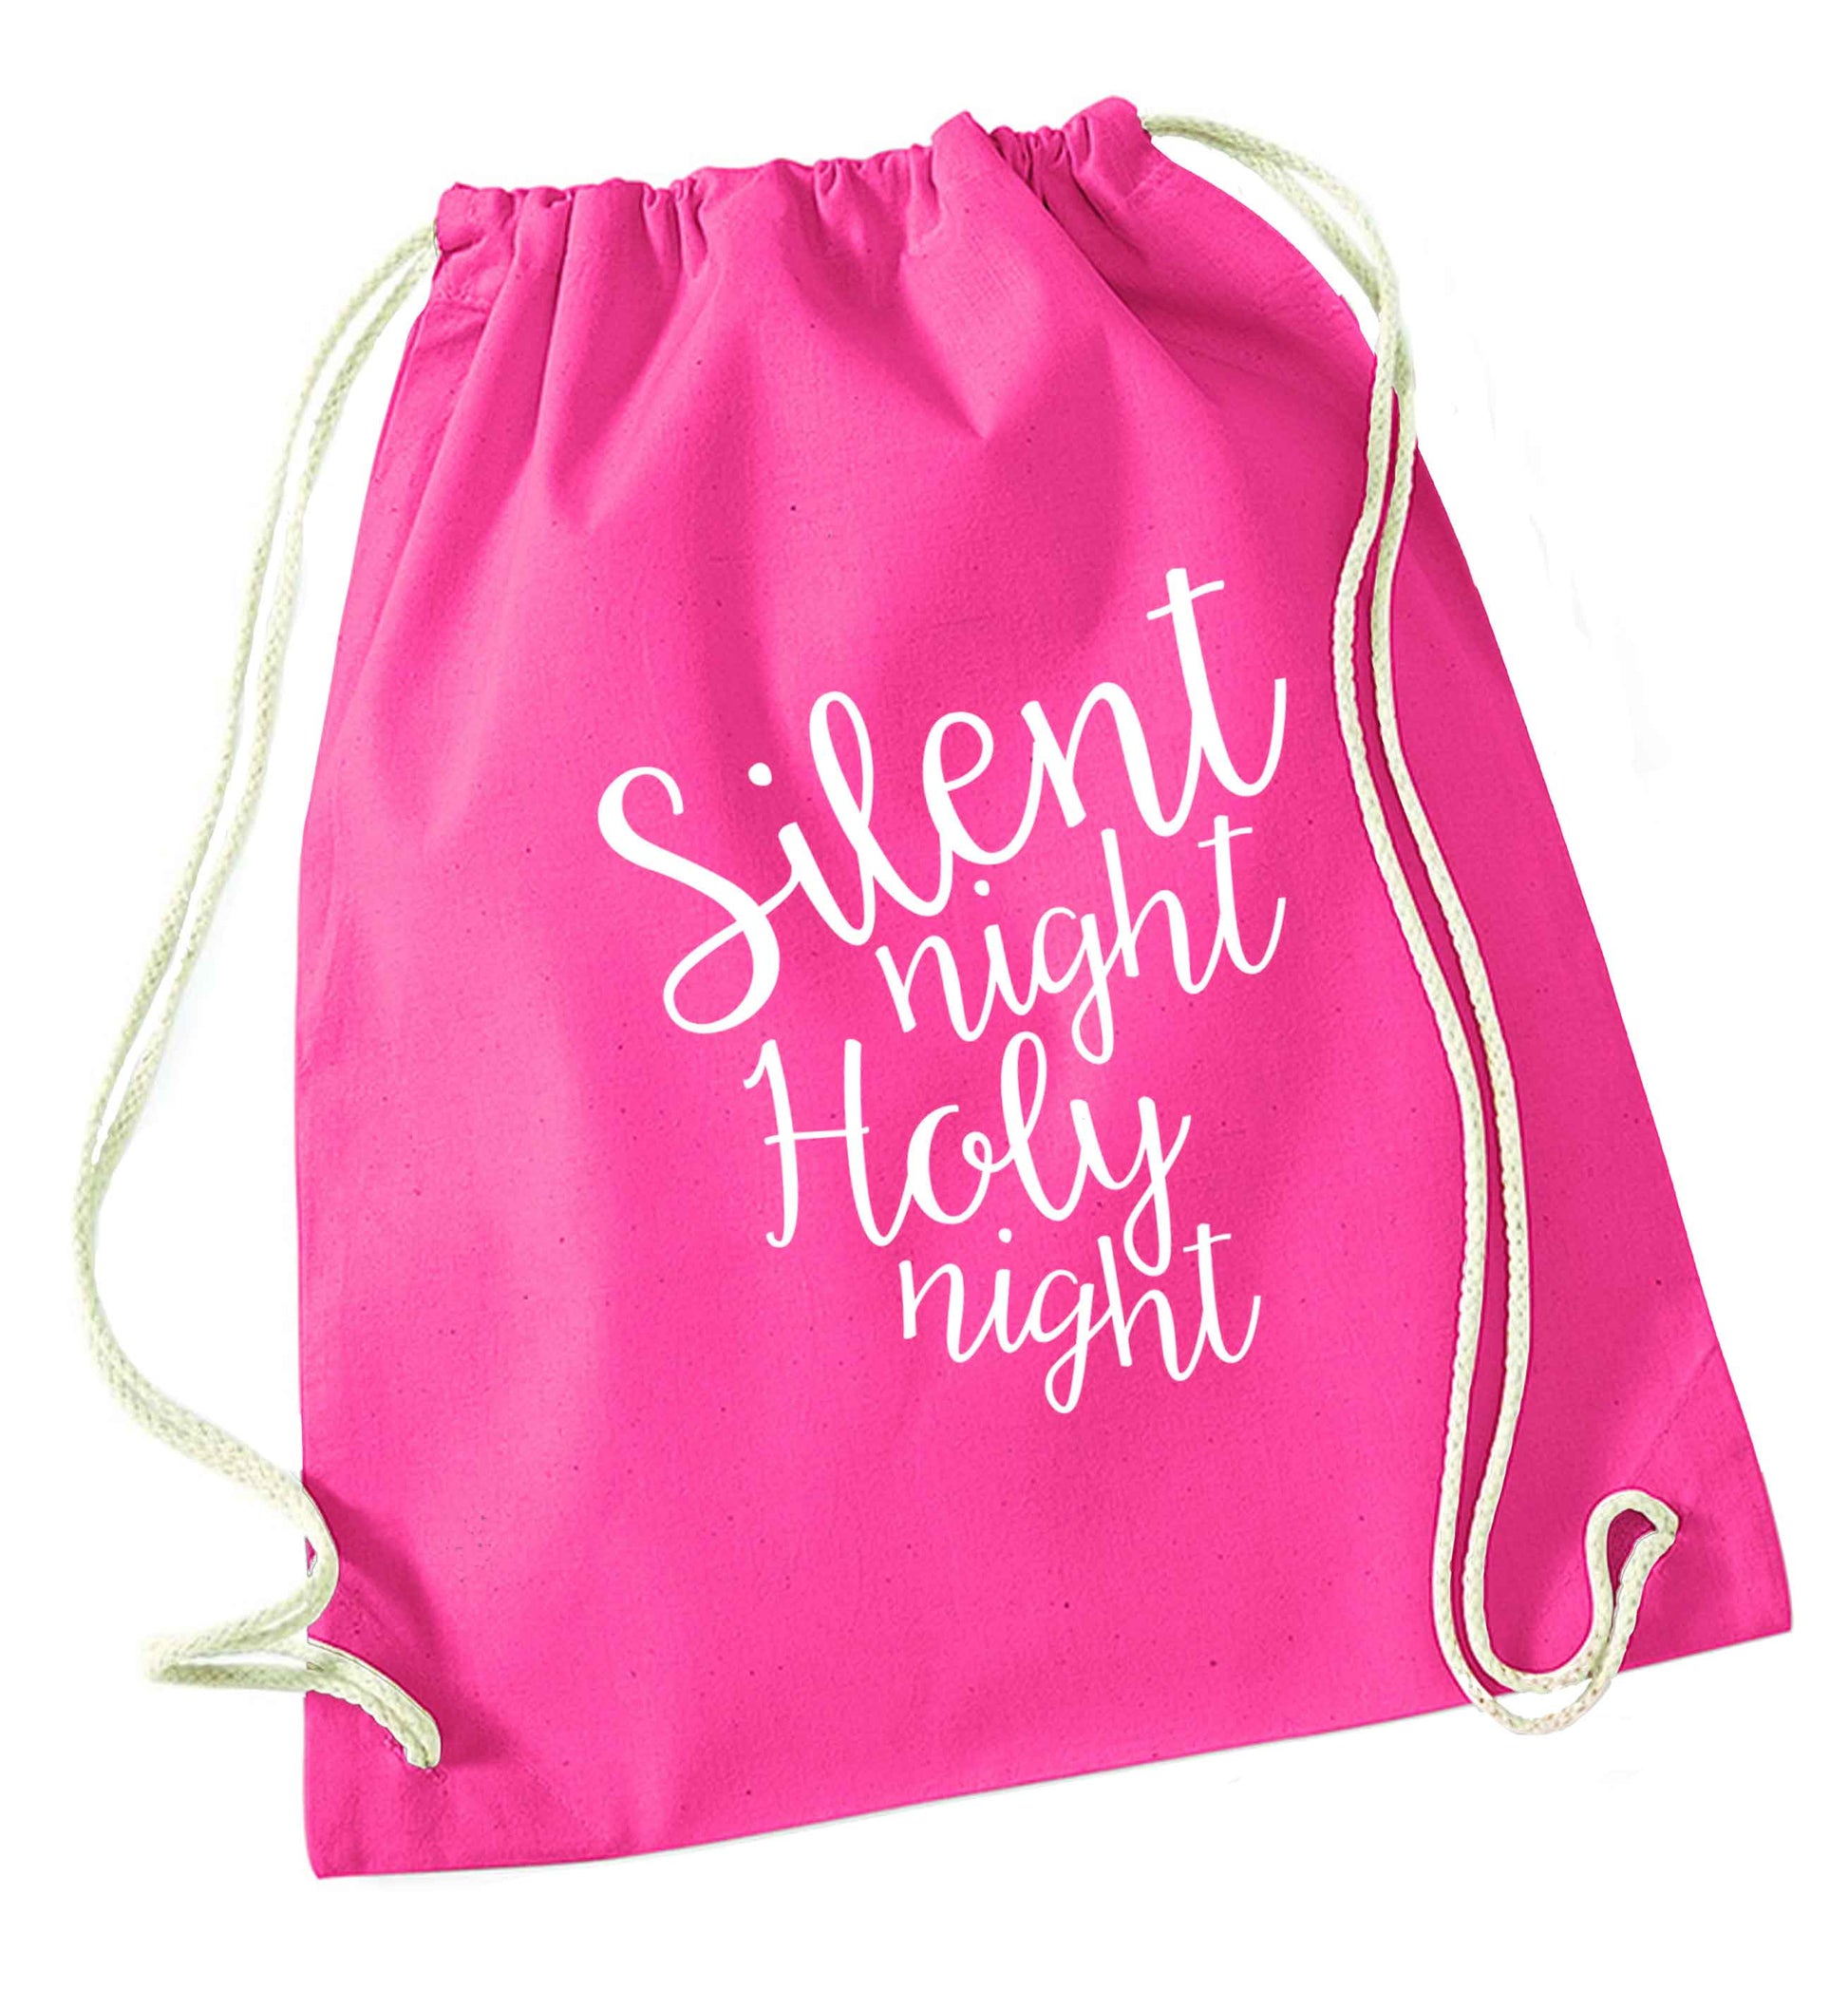 Silent night holy night pink drawstring bag